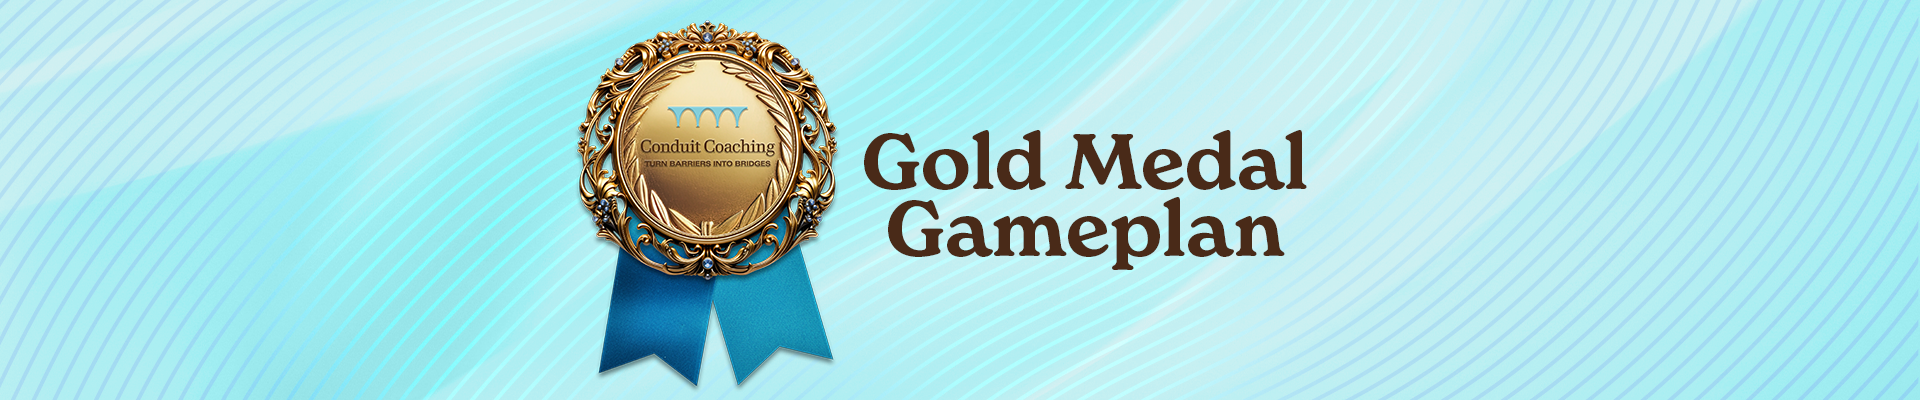 Gold Medal Gameplan